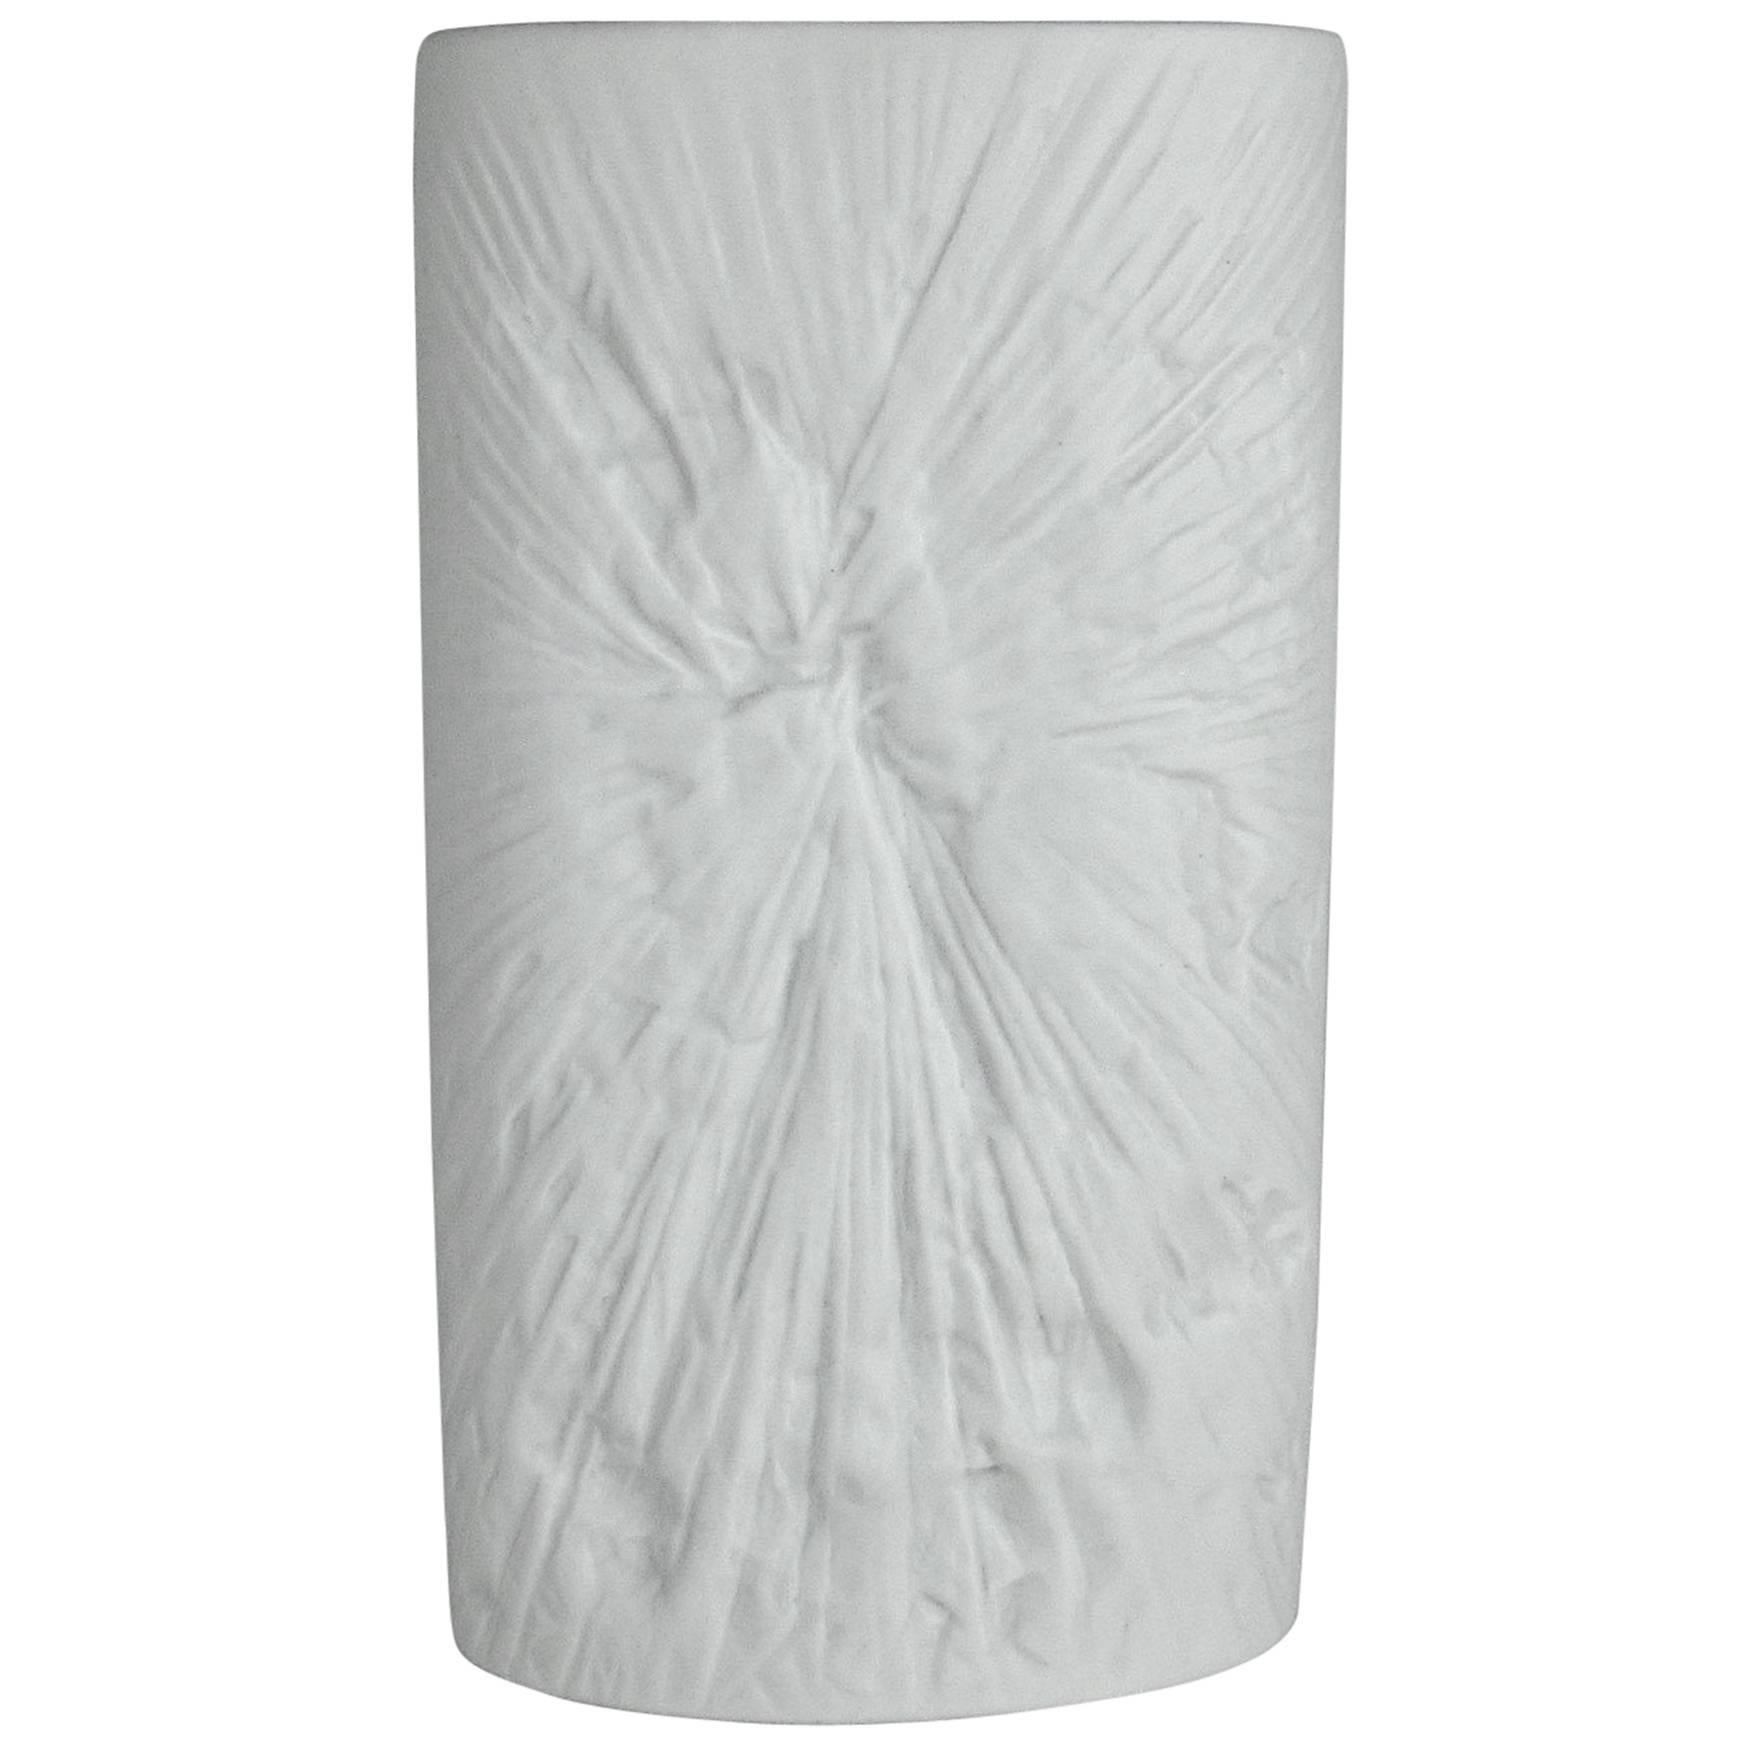 Midcentury Op Art White Porcelain Vase by Martin Freyer for Rosenthal